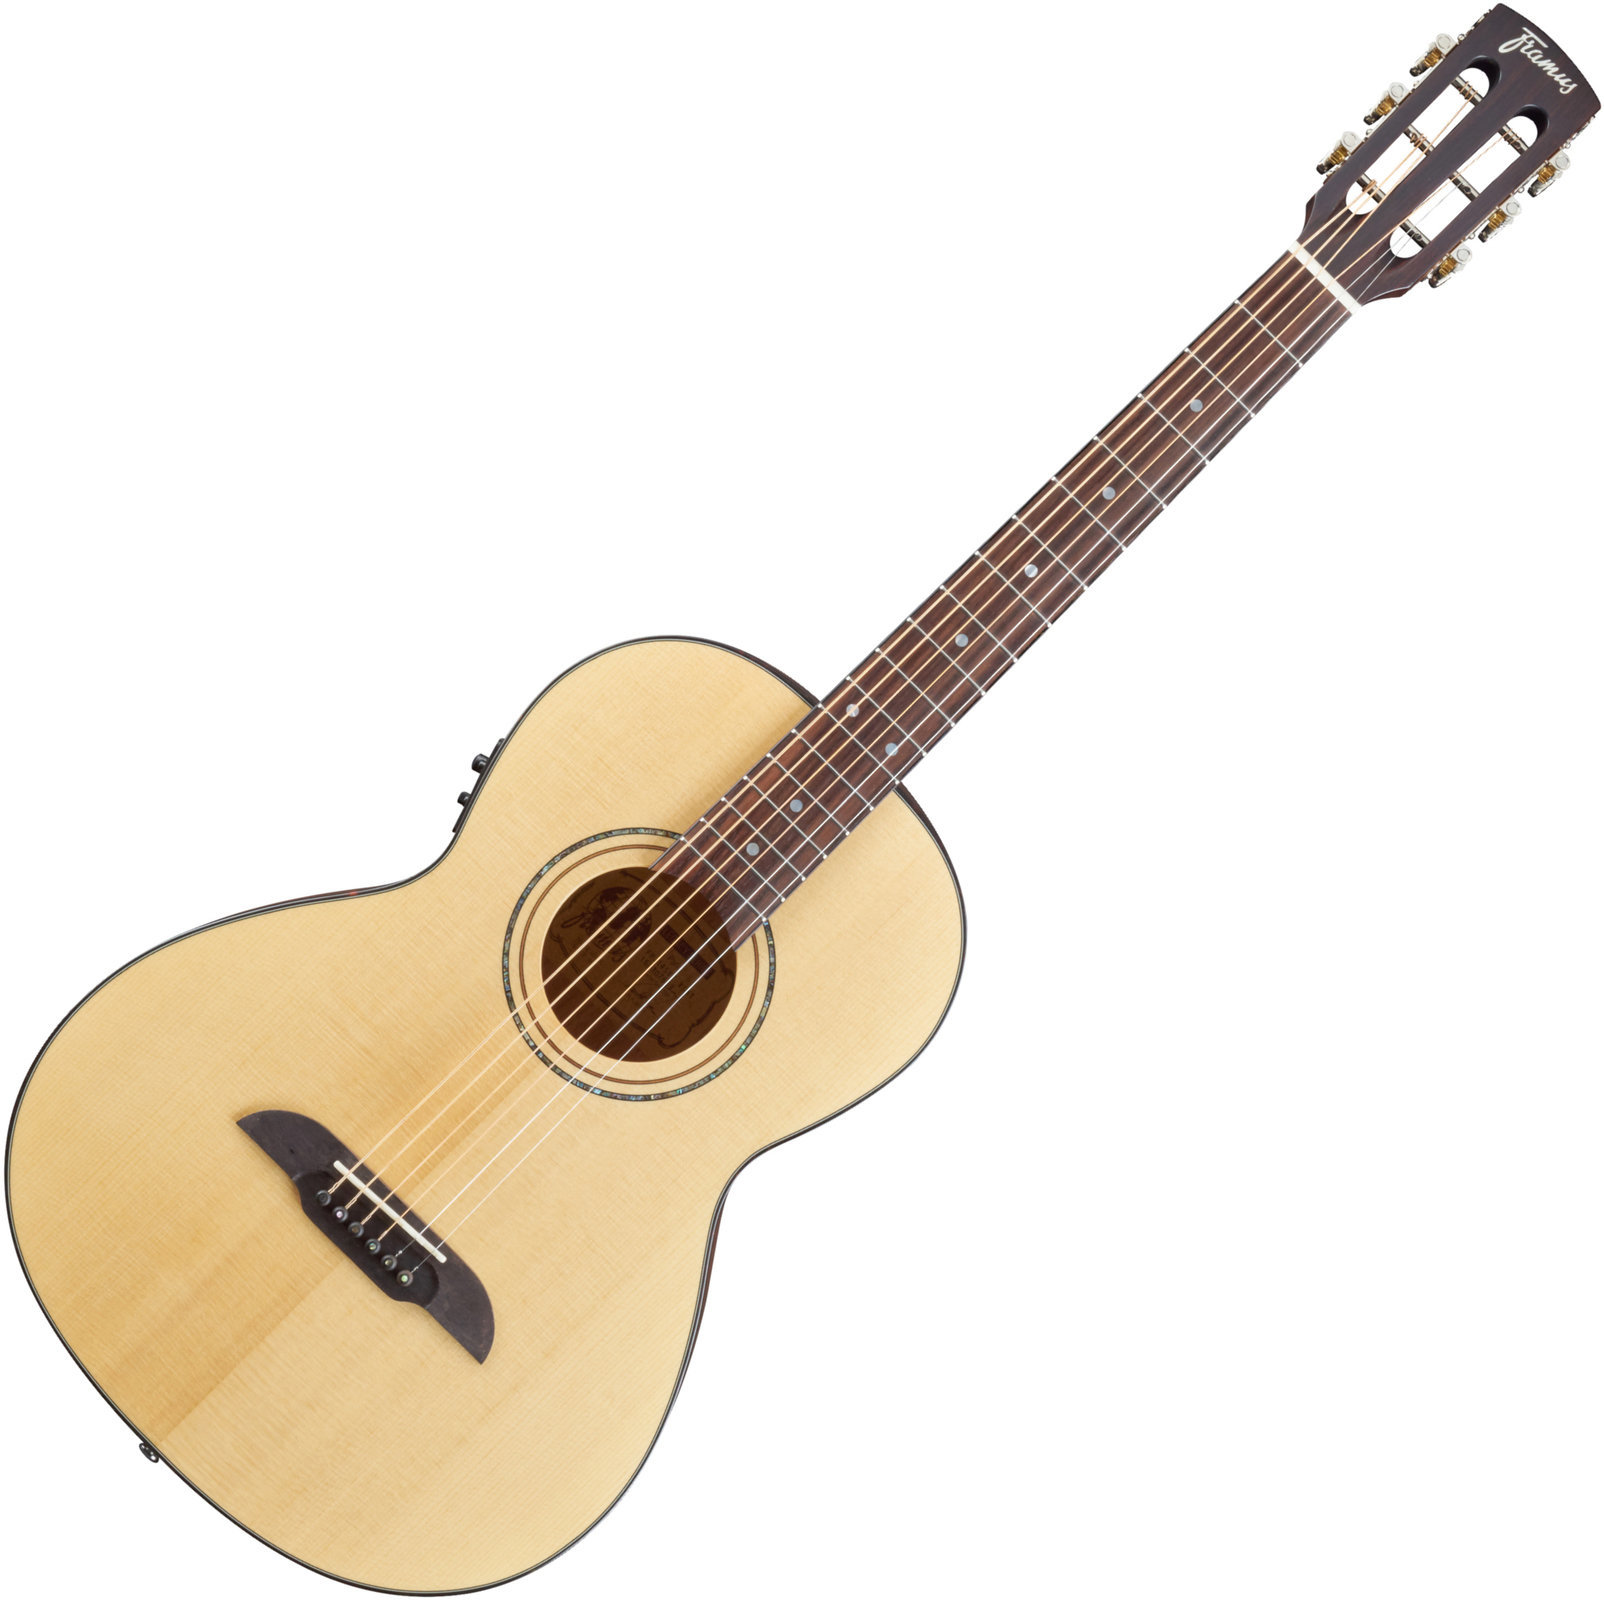 Electro-acoustic guitar Framus FP 14 SV VSNT E Vintage Transparent Satin Natural Tinted